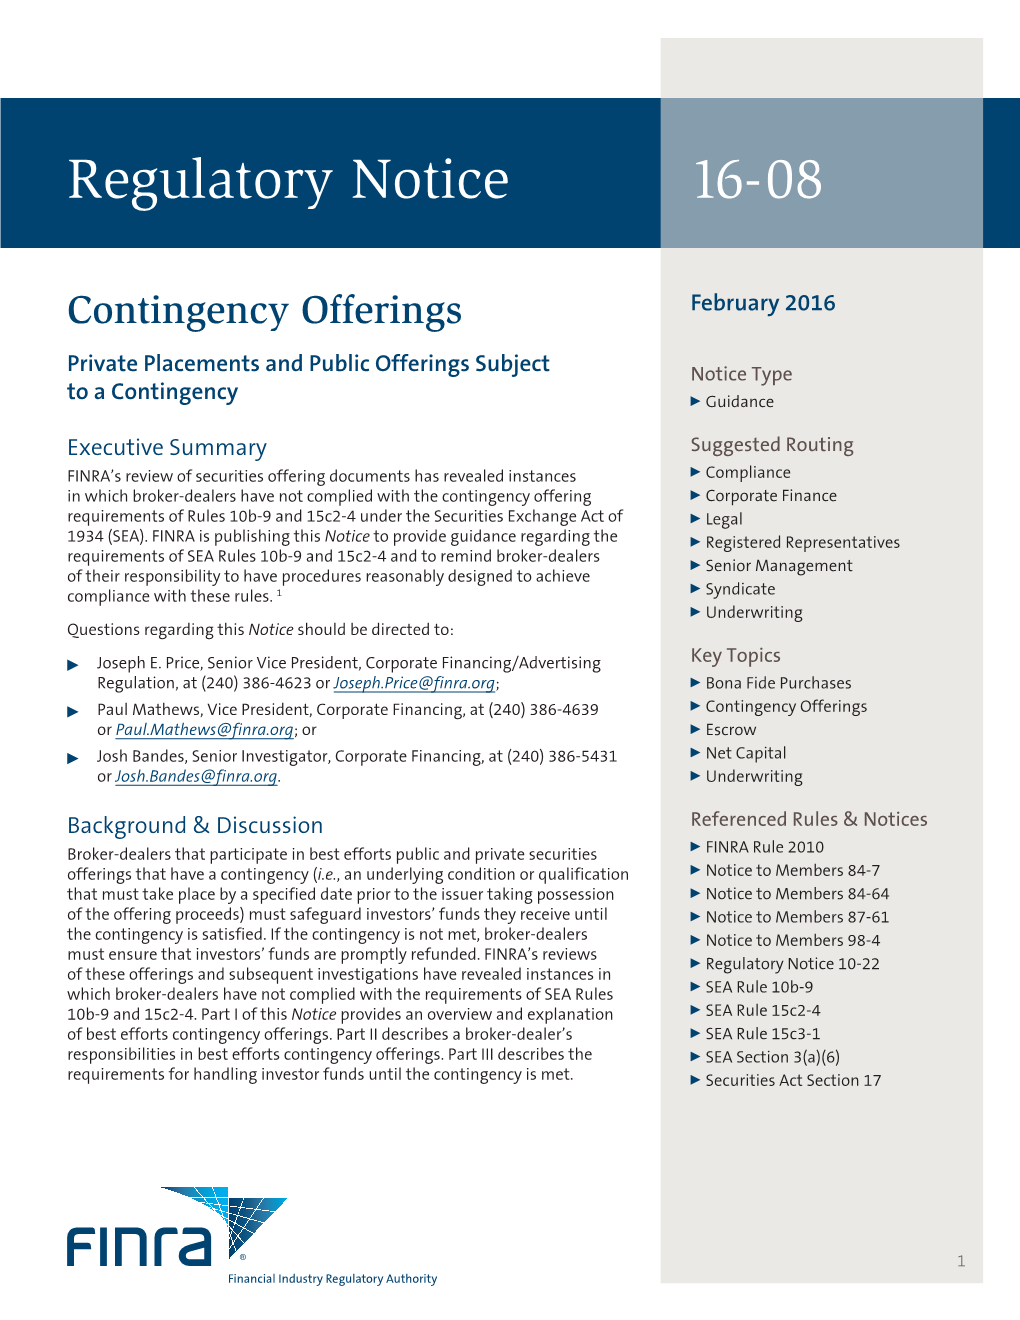 Regulatory Notice 16-08